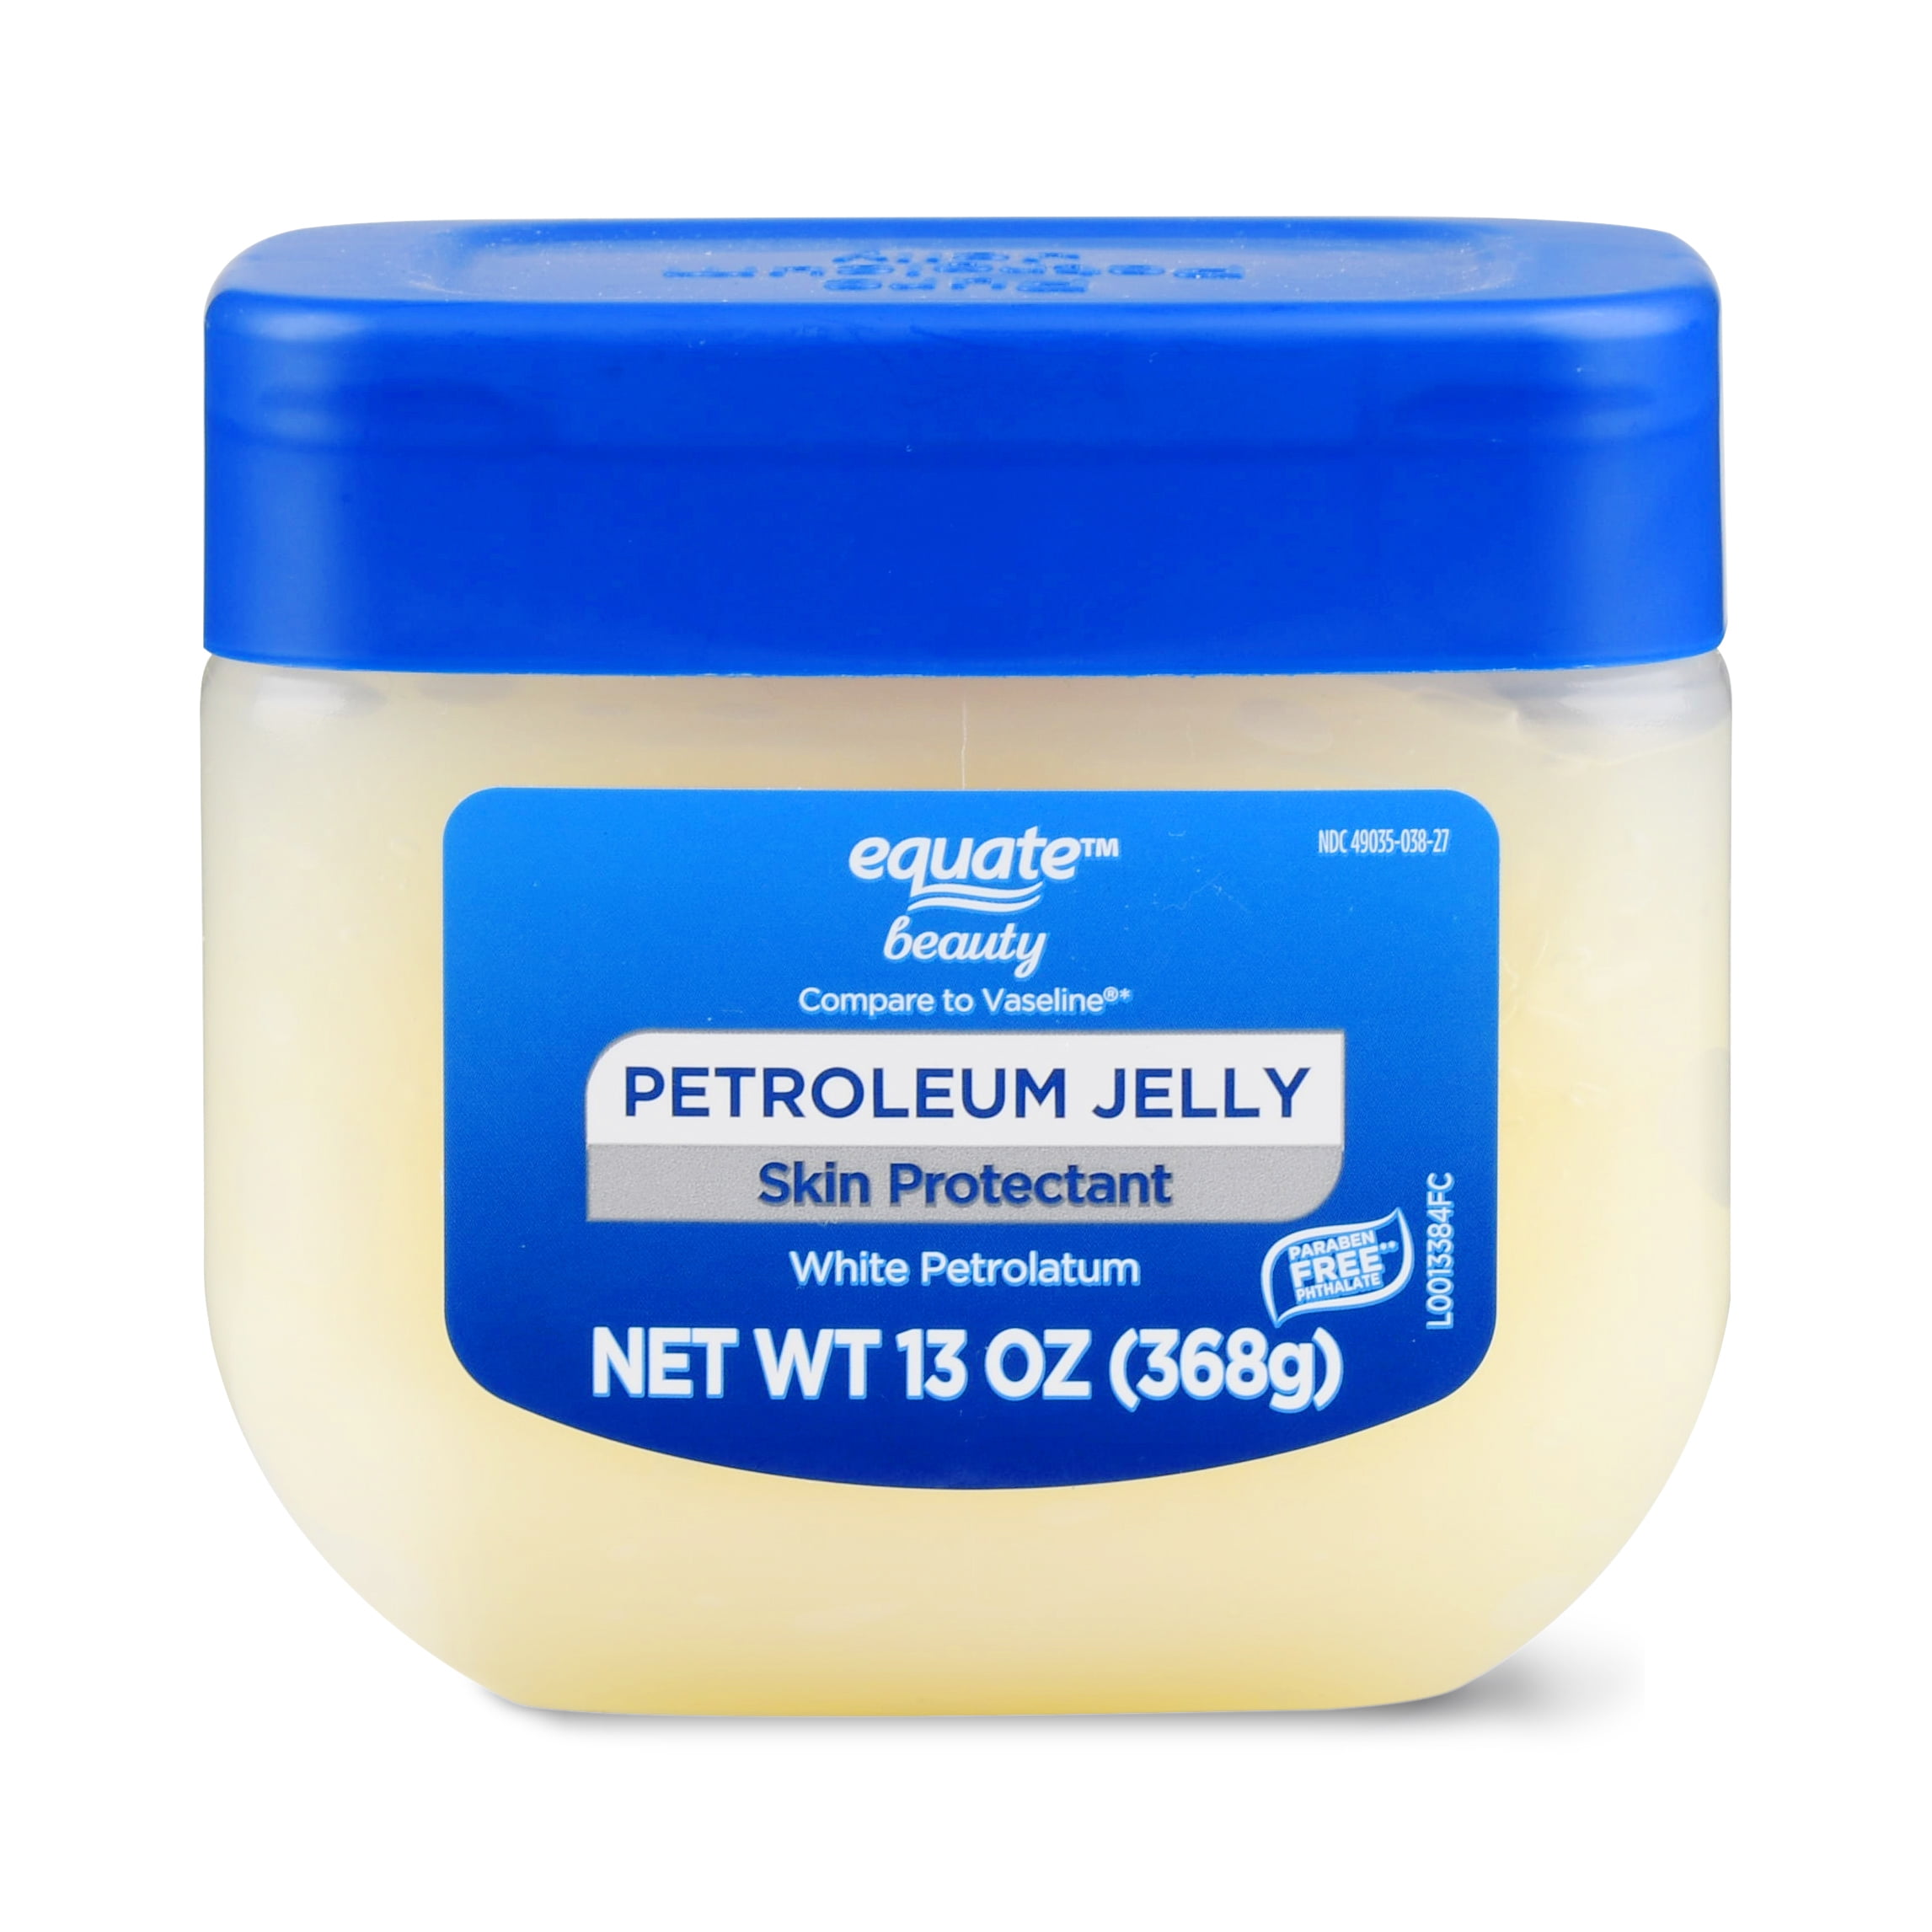 Equate Beauty Petroleum Jelly Skin Protectant 13 Oz Walmart Com Walmart Com